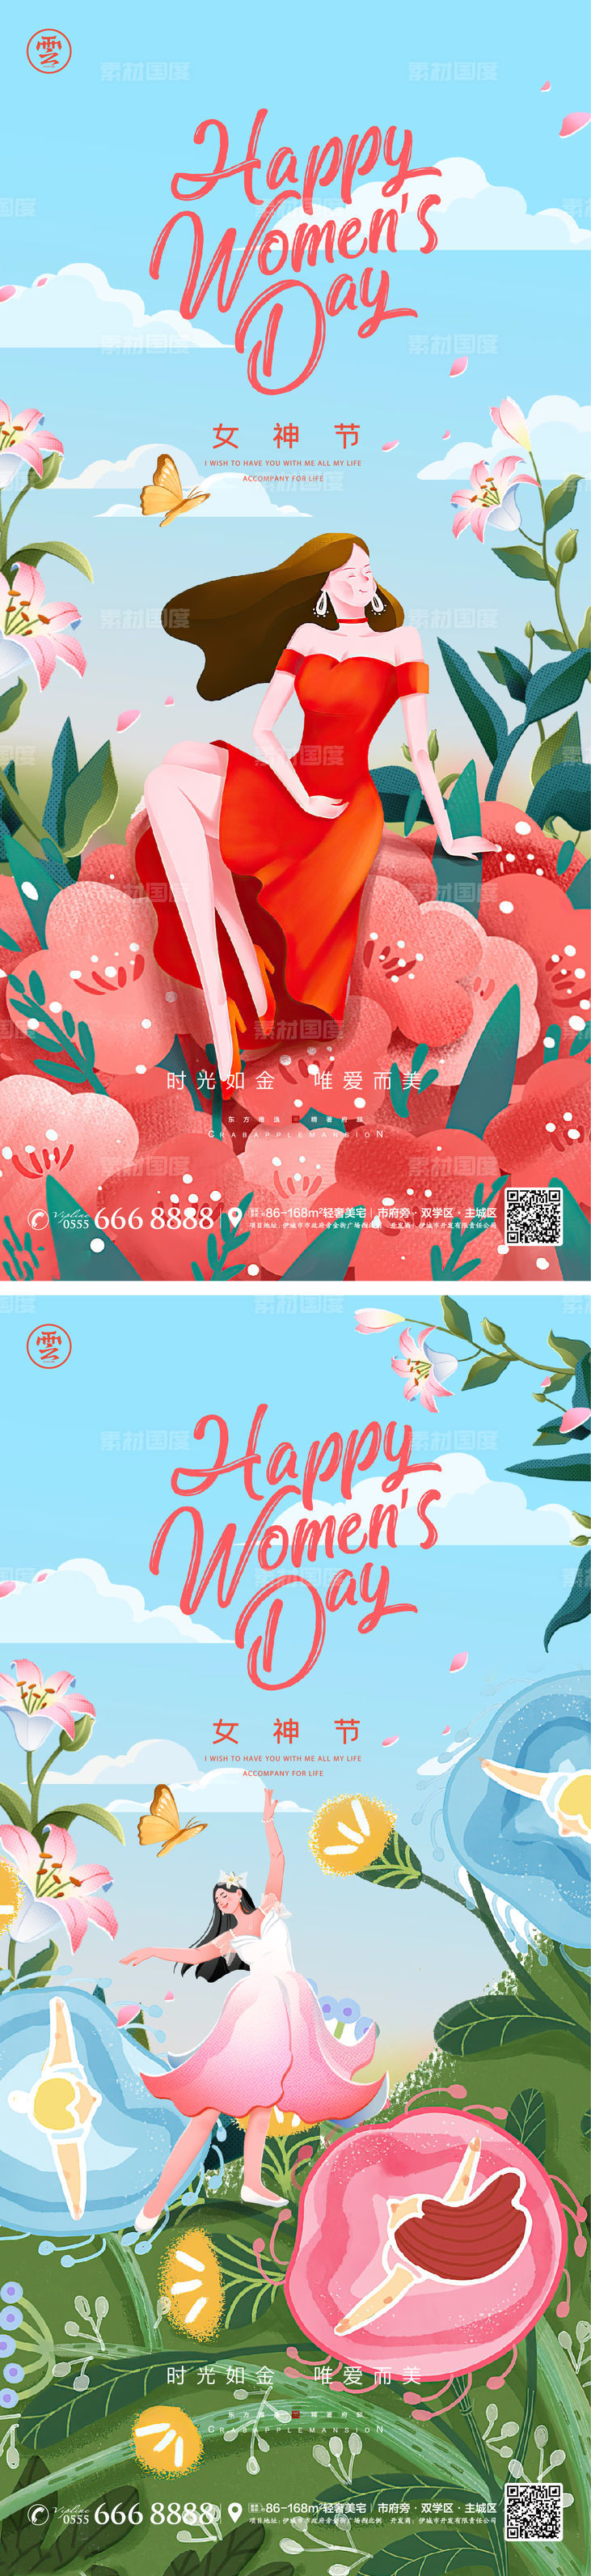 三八 妇女节 女神节 海报